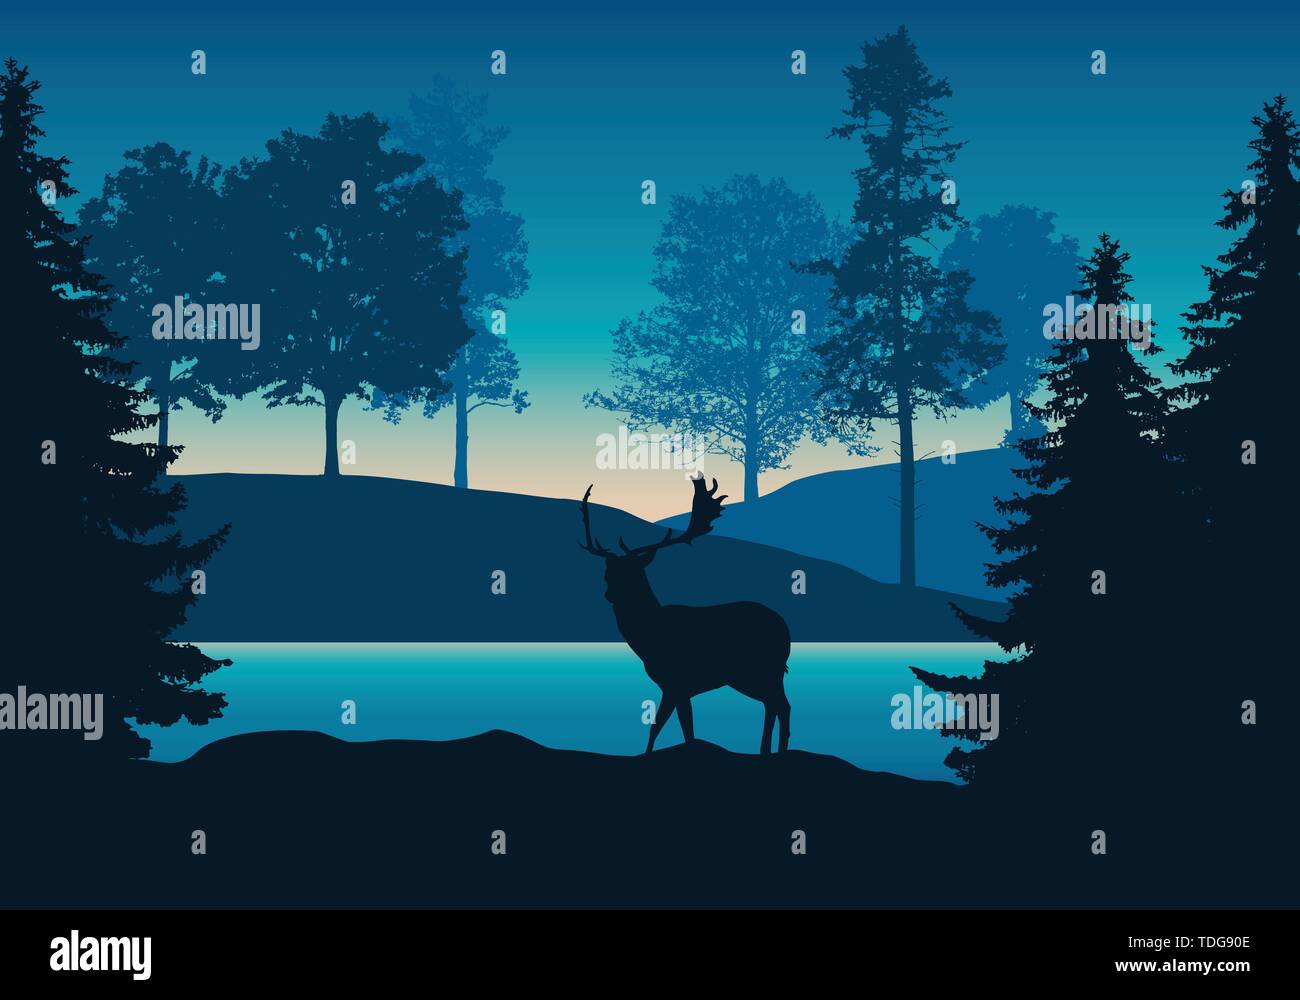 Realistische Darstellung der hügeligen Landschaft mit Wald, Fluss oder See und ständigen Rotwild unter blau-grünen Himmel mit Dawn-Vektor Stock Vektor